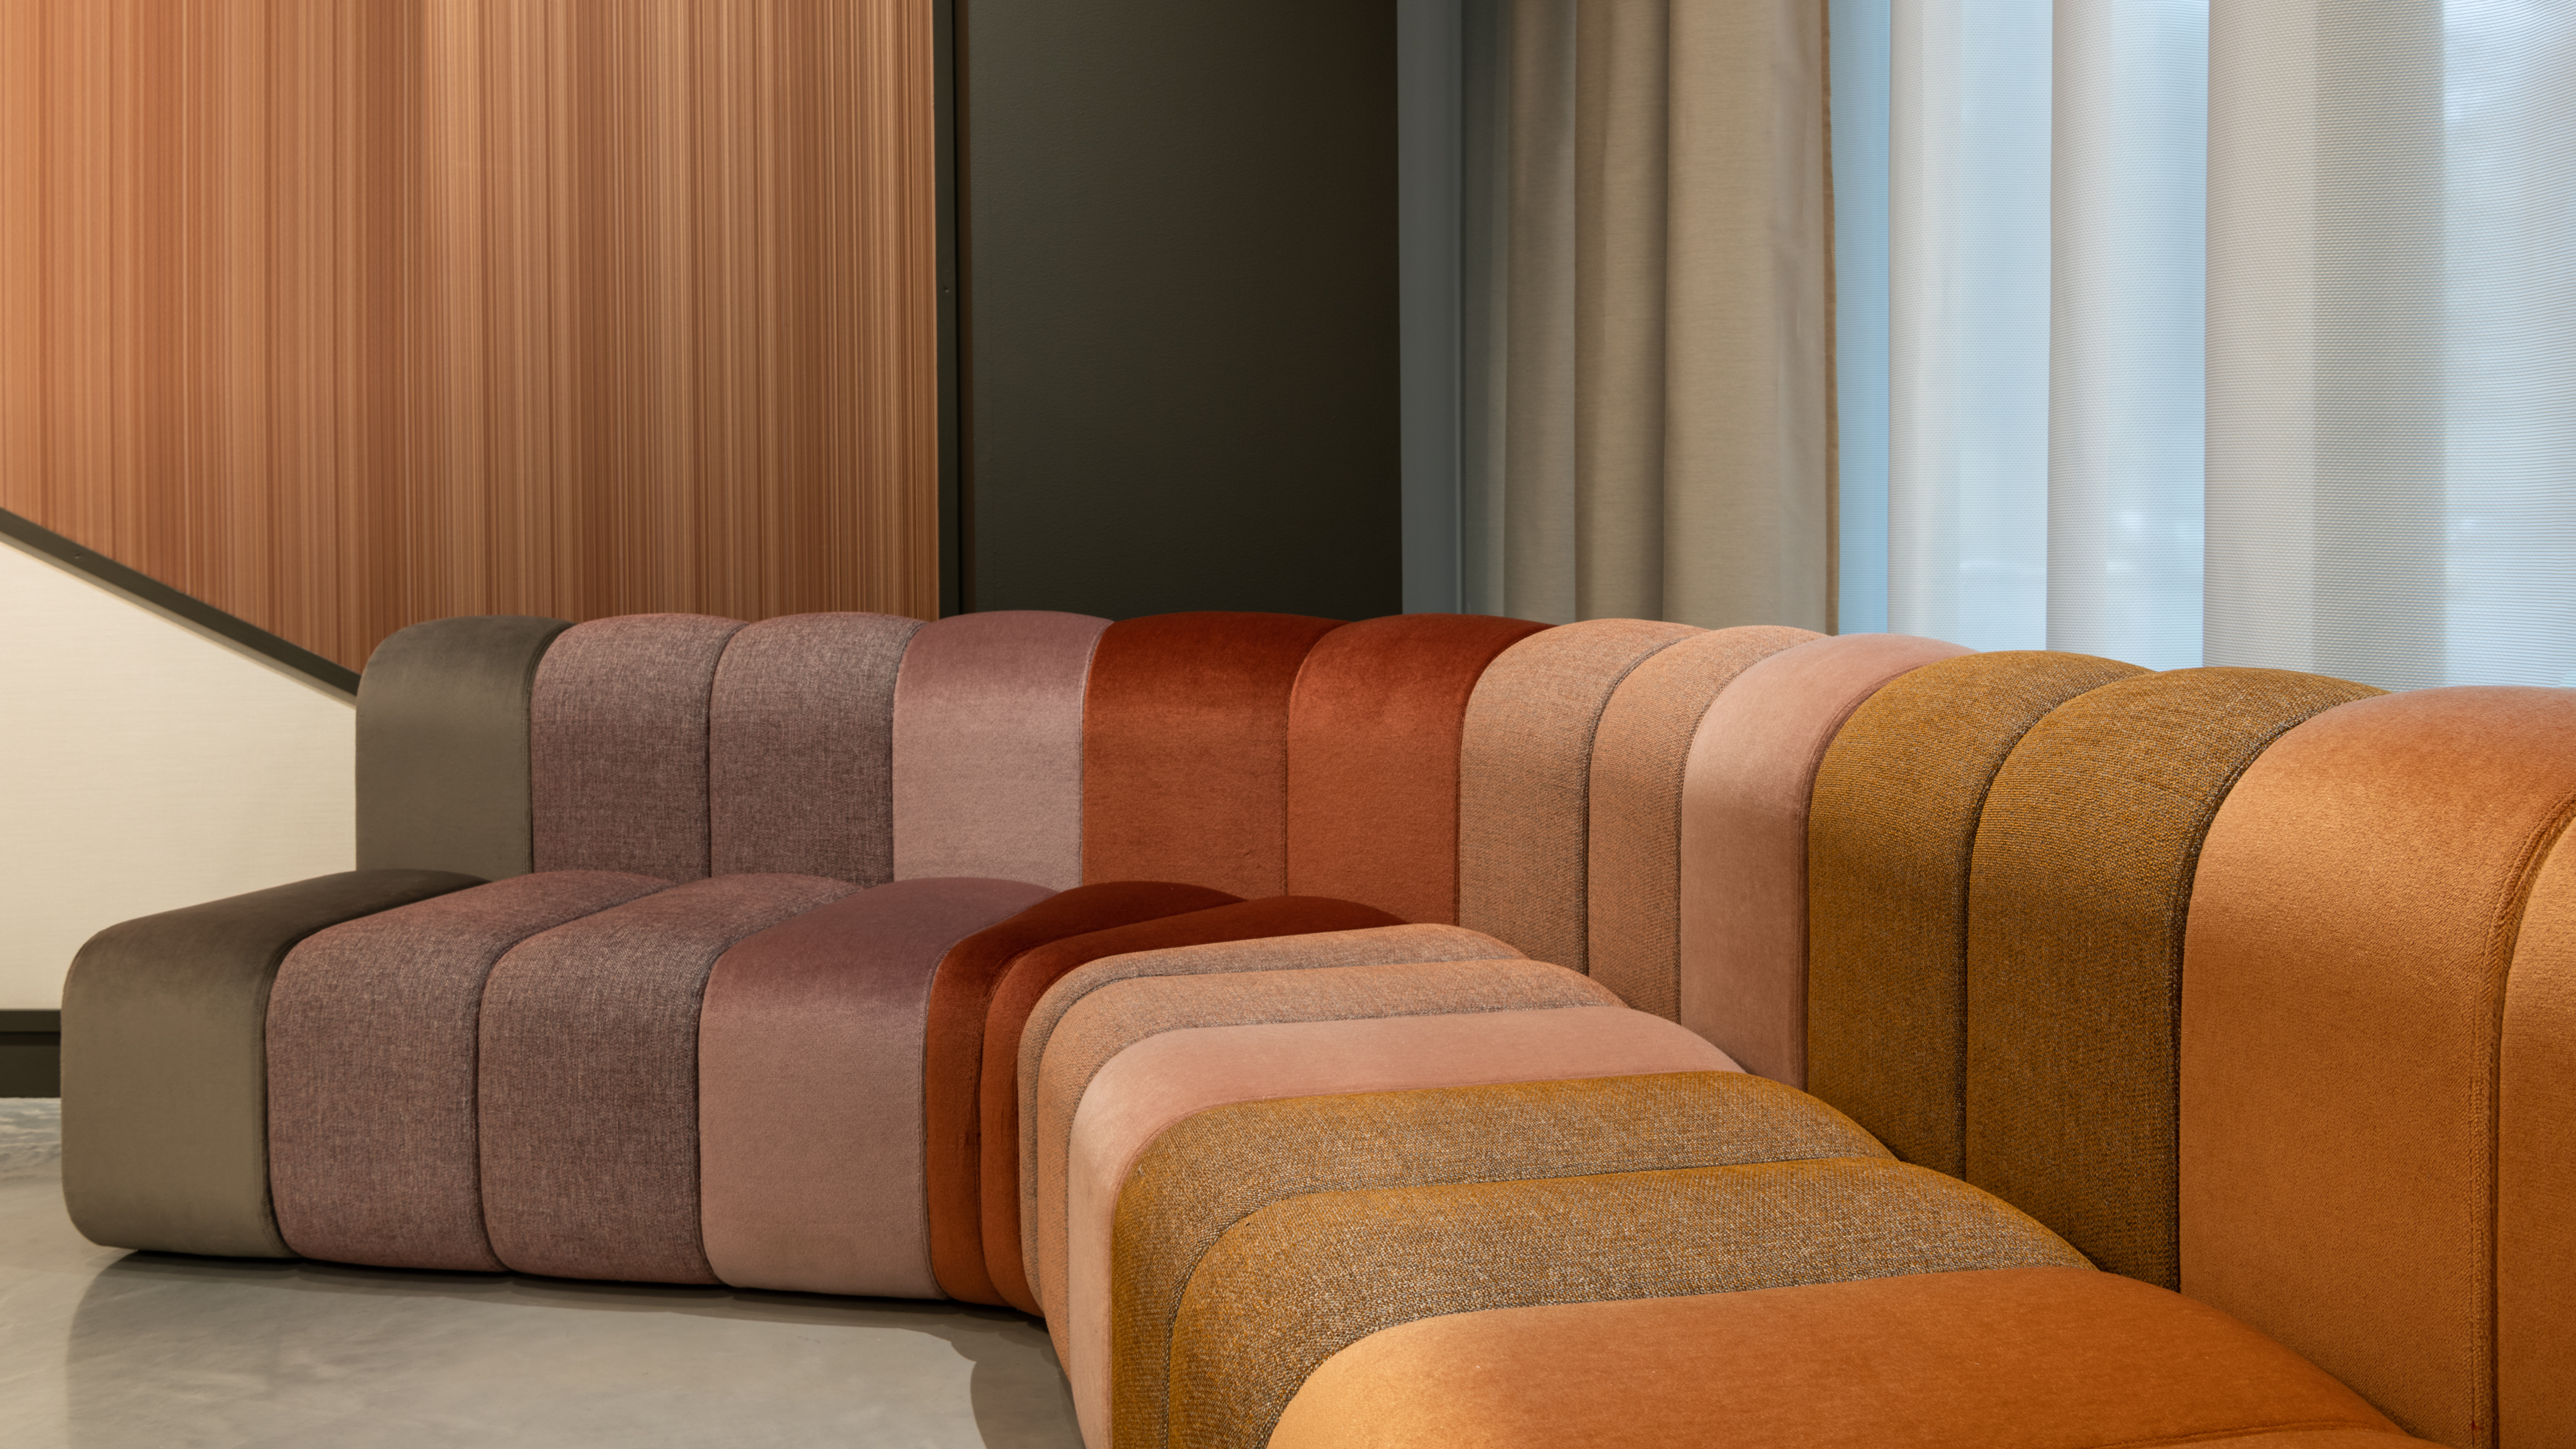 Vescom Stockholm showroom sofa upholstered in velvet mohairs